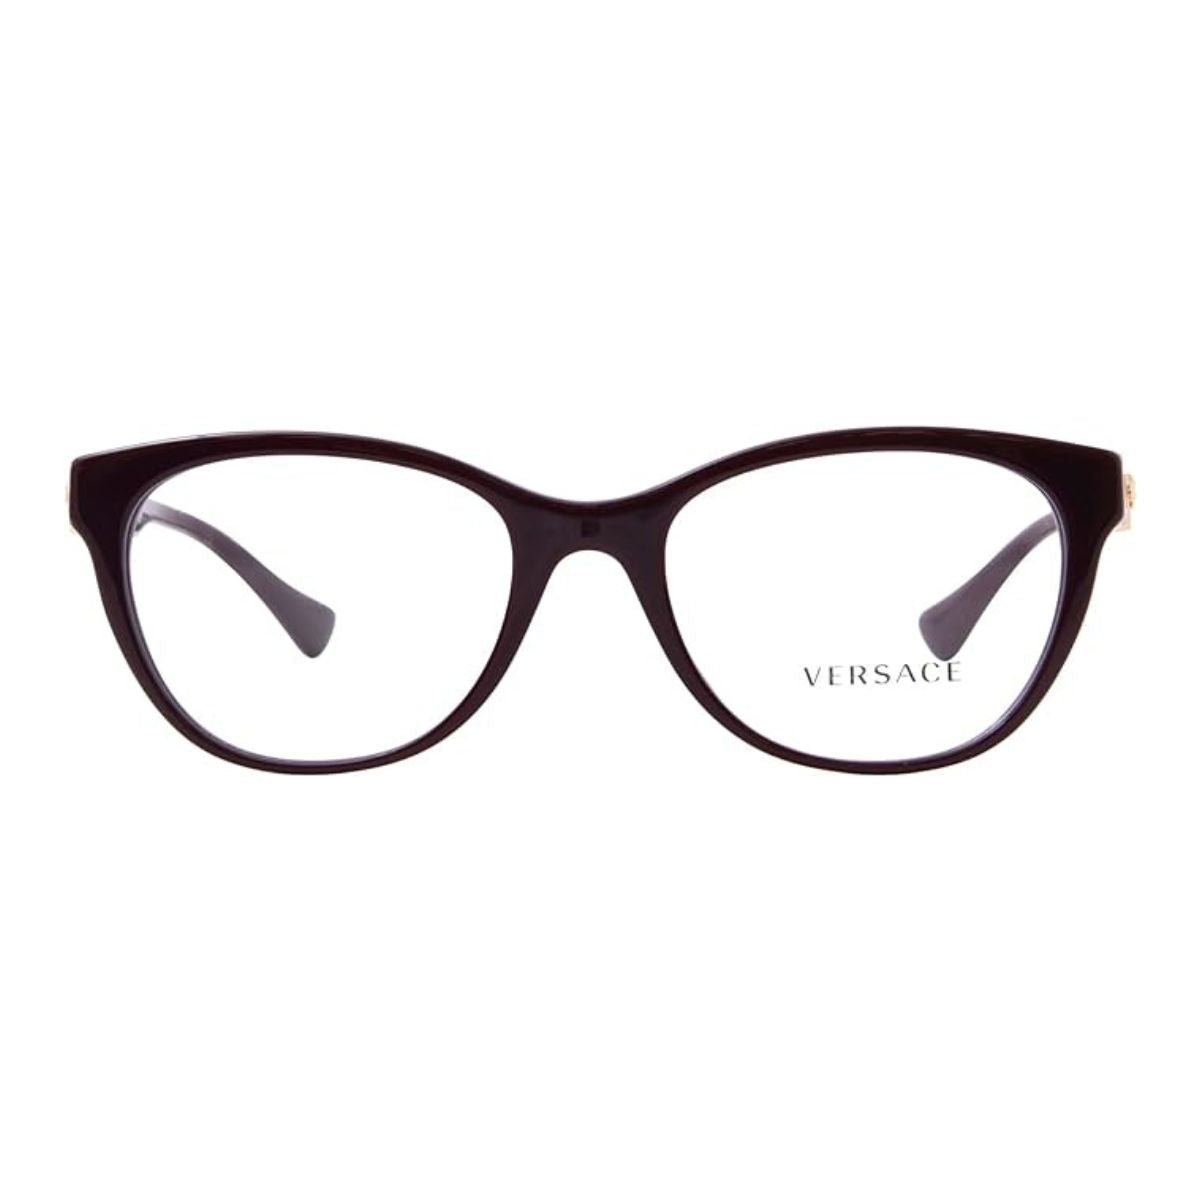 "Buy Versace 3330 5386 Cat Eye Eyewear Frame For Women's At Optorium"